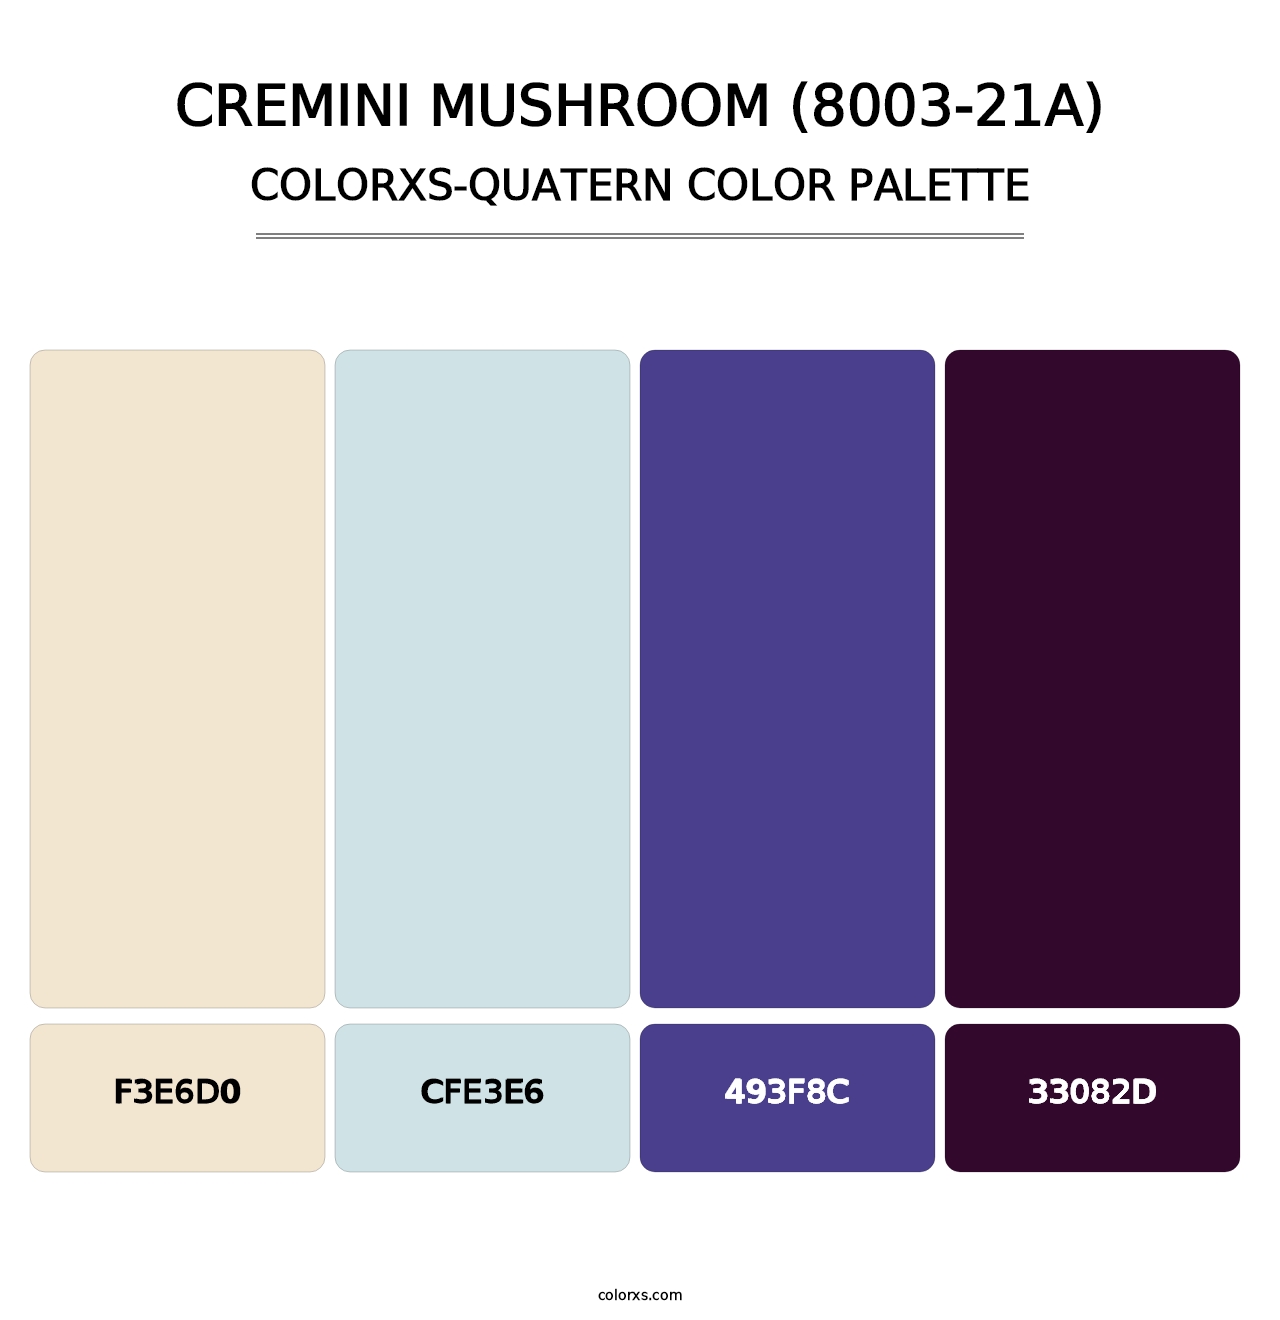 Cremini Mushroom (8003-21A) - Colorxs Quatern Palette